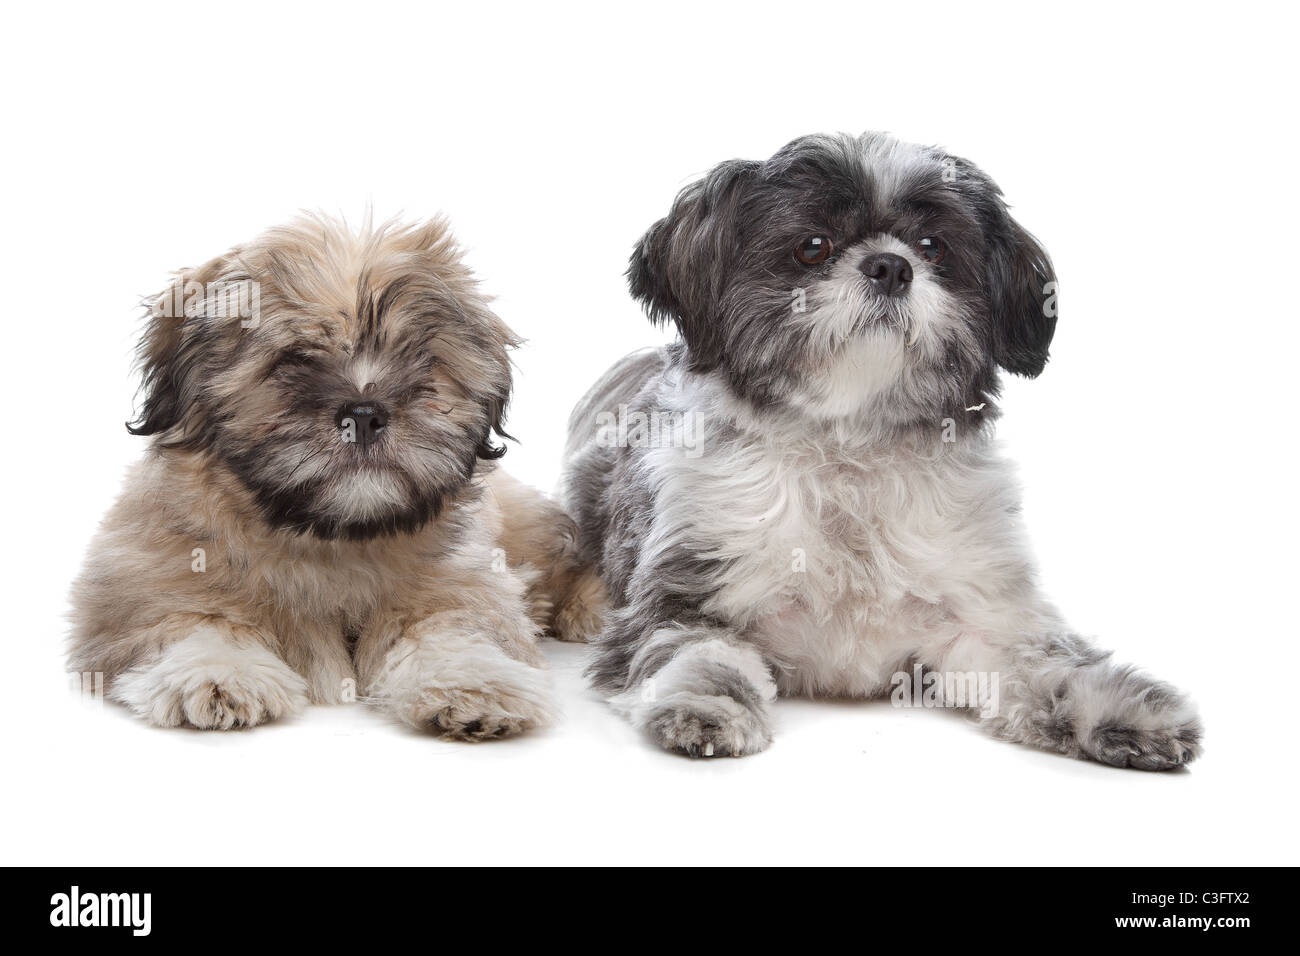 L'apso Lhaso et un shih tzu chien devant un fond blanc Banque D'Images